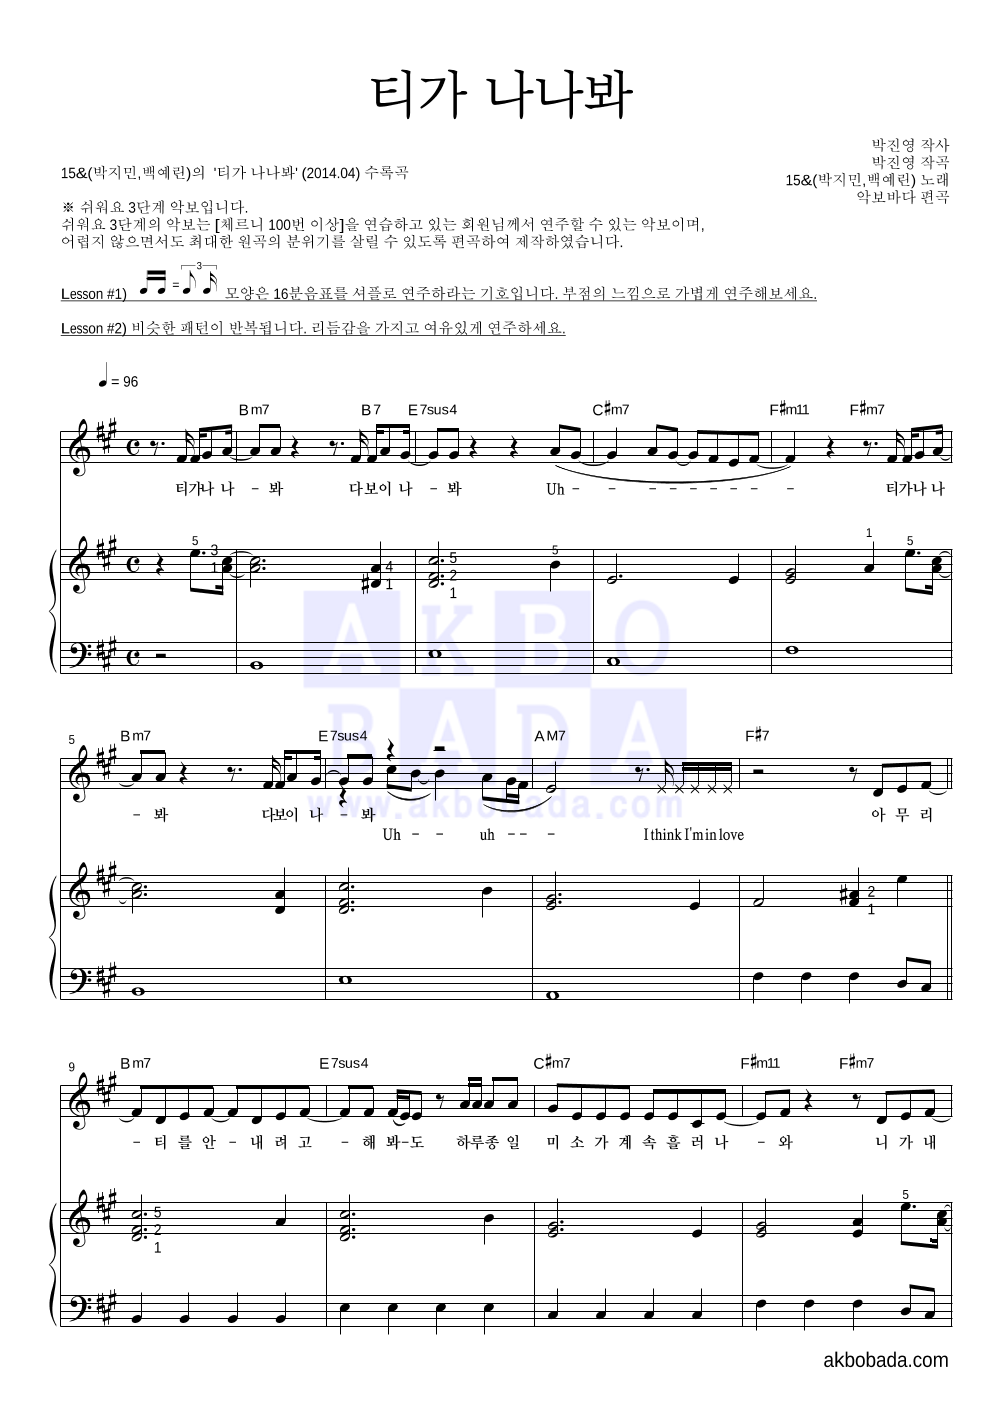 15&(박지민,백예린) - 티가 나나봐 피아노3단-쉬워요 악보 